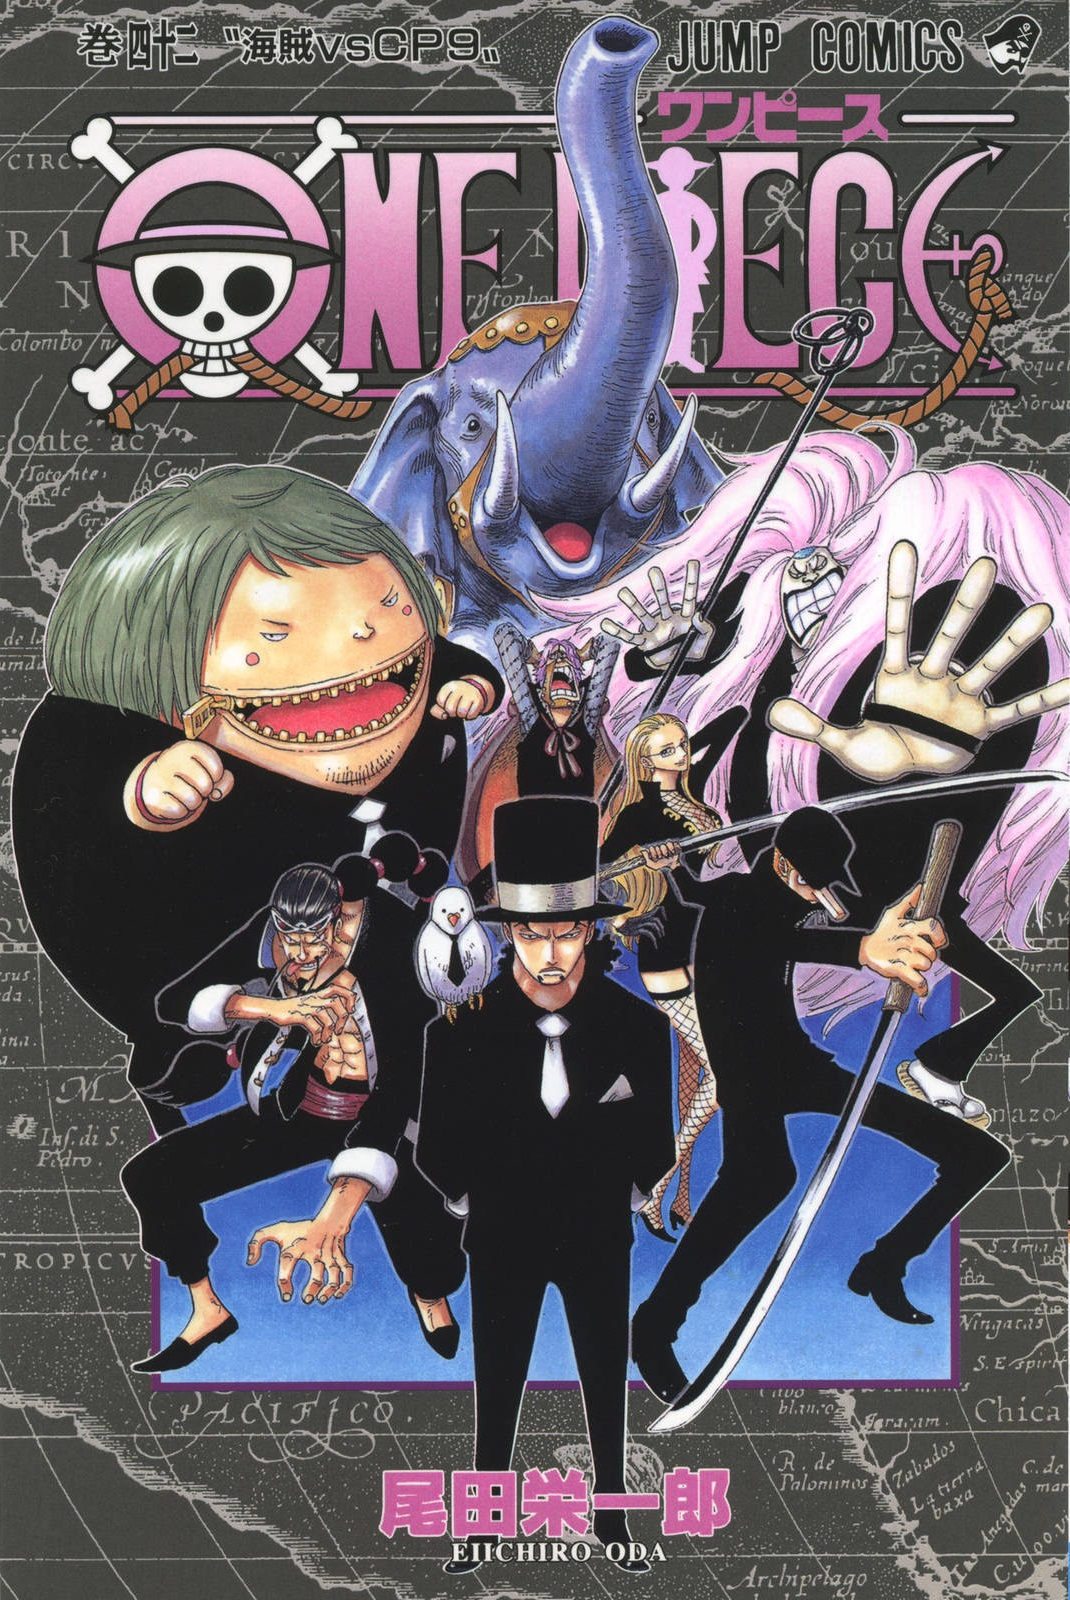 Episódio 406, One Piece Wiki